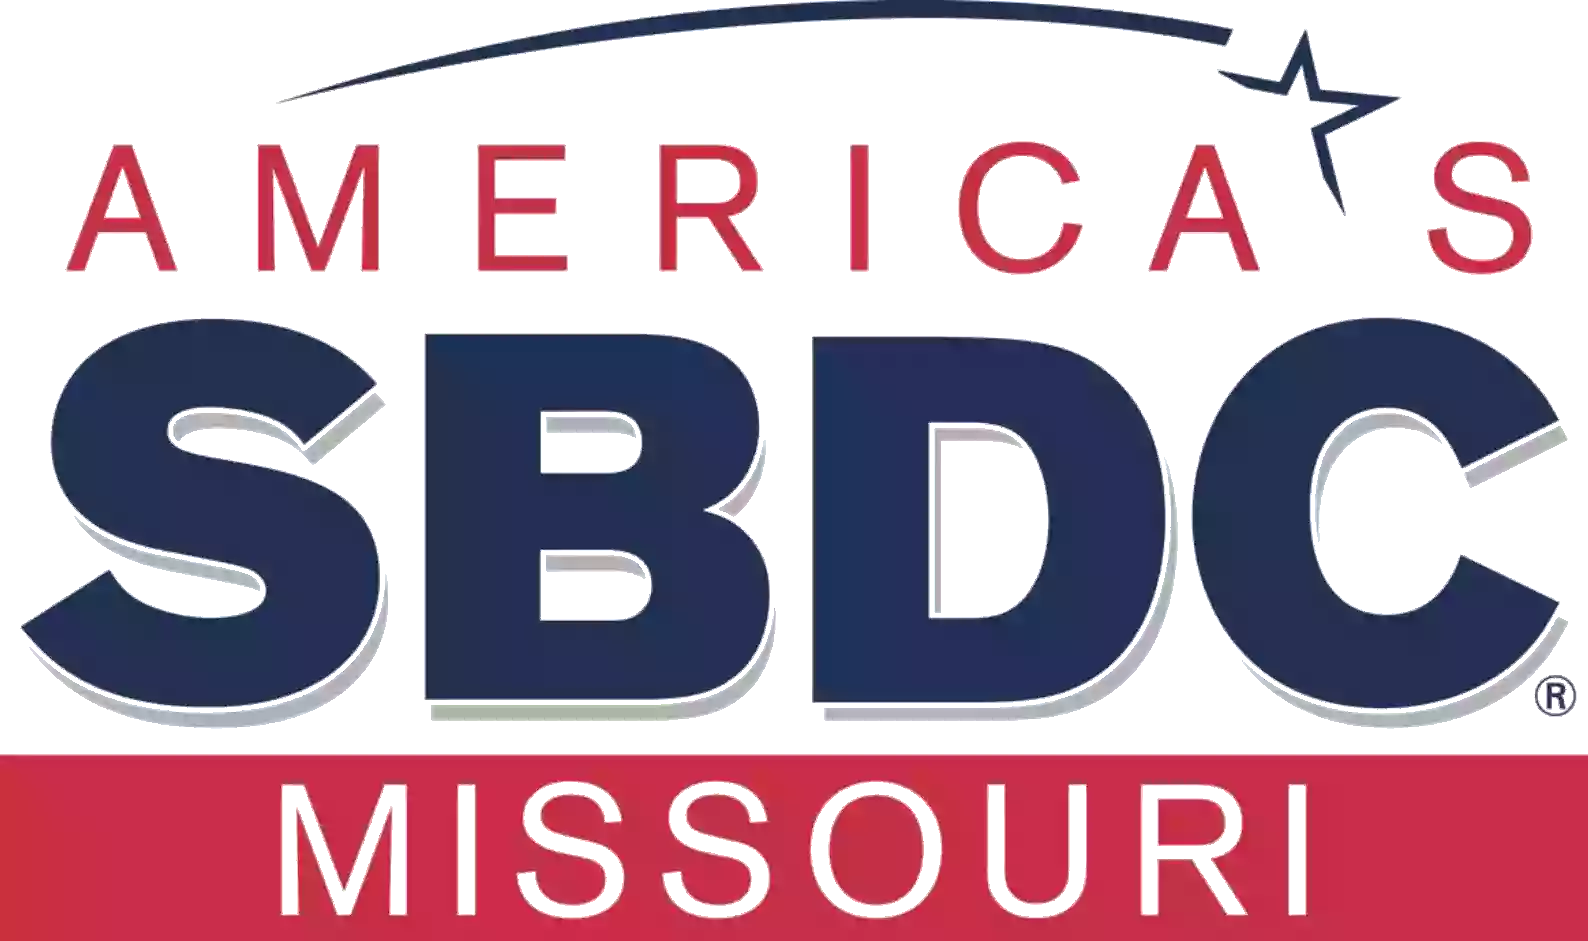 Missouri SBDC at Missouri Southern State University